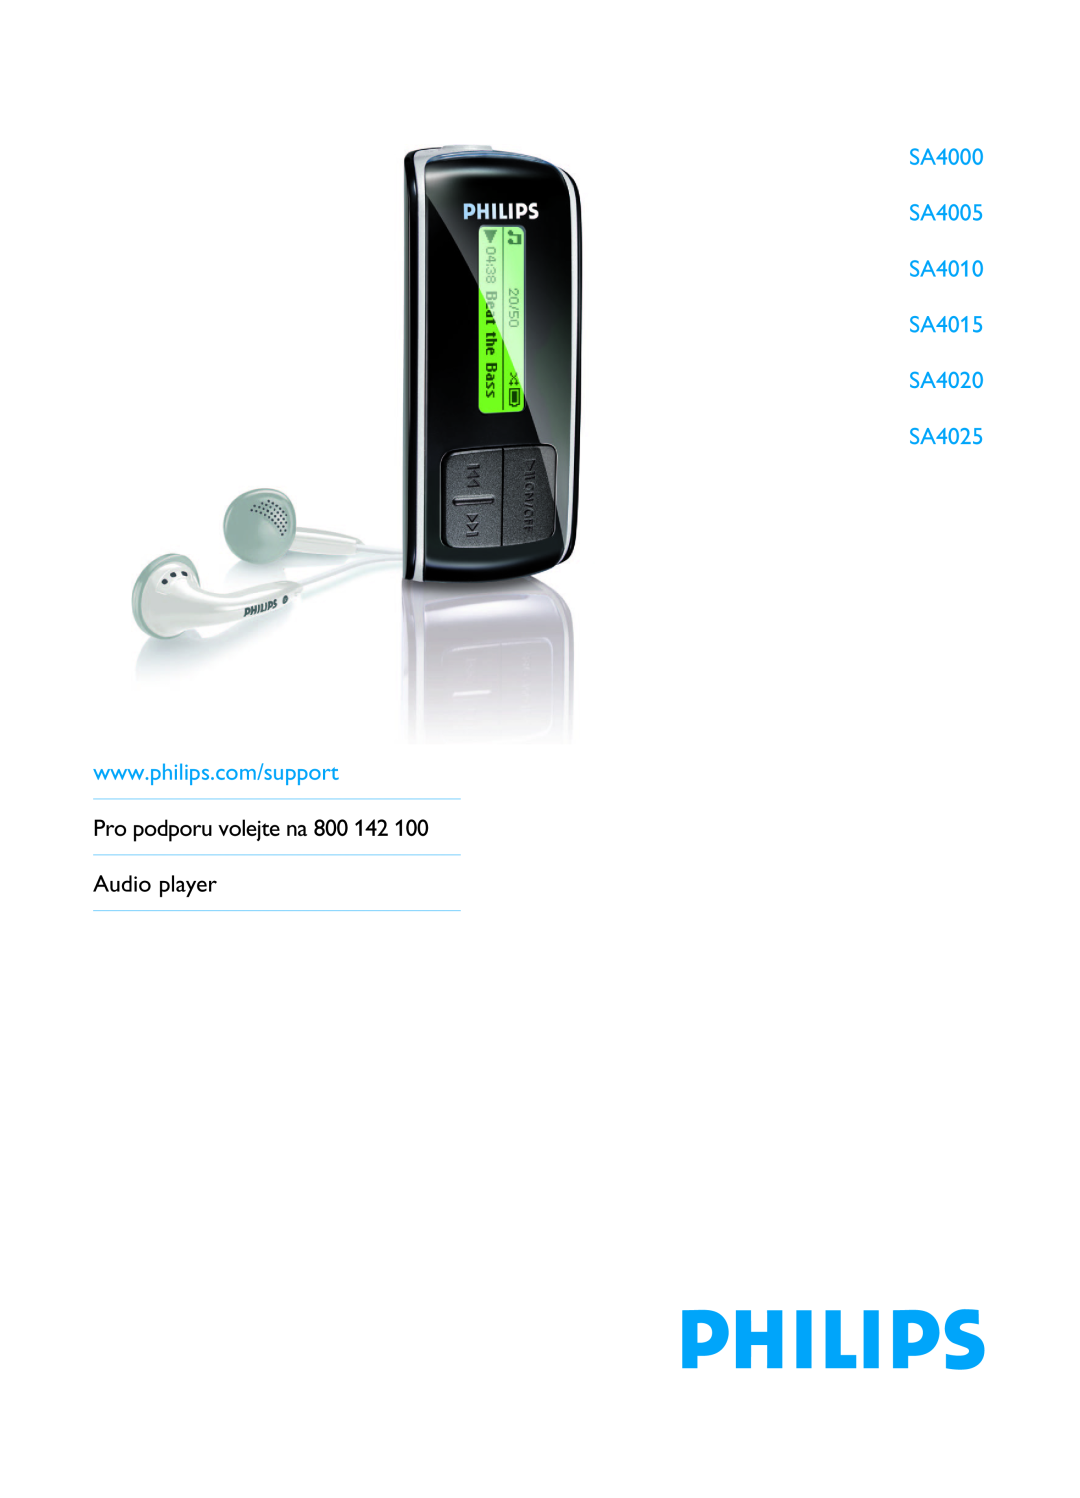 Philips manual SA4000 SA4005 SA4010 SA4015 SA4020 SA4025, Pro podporu volejte na 800 142 Audio player 